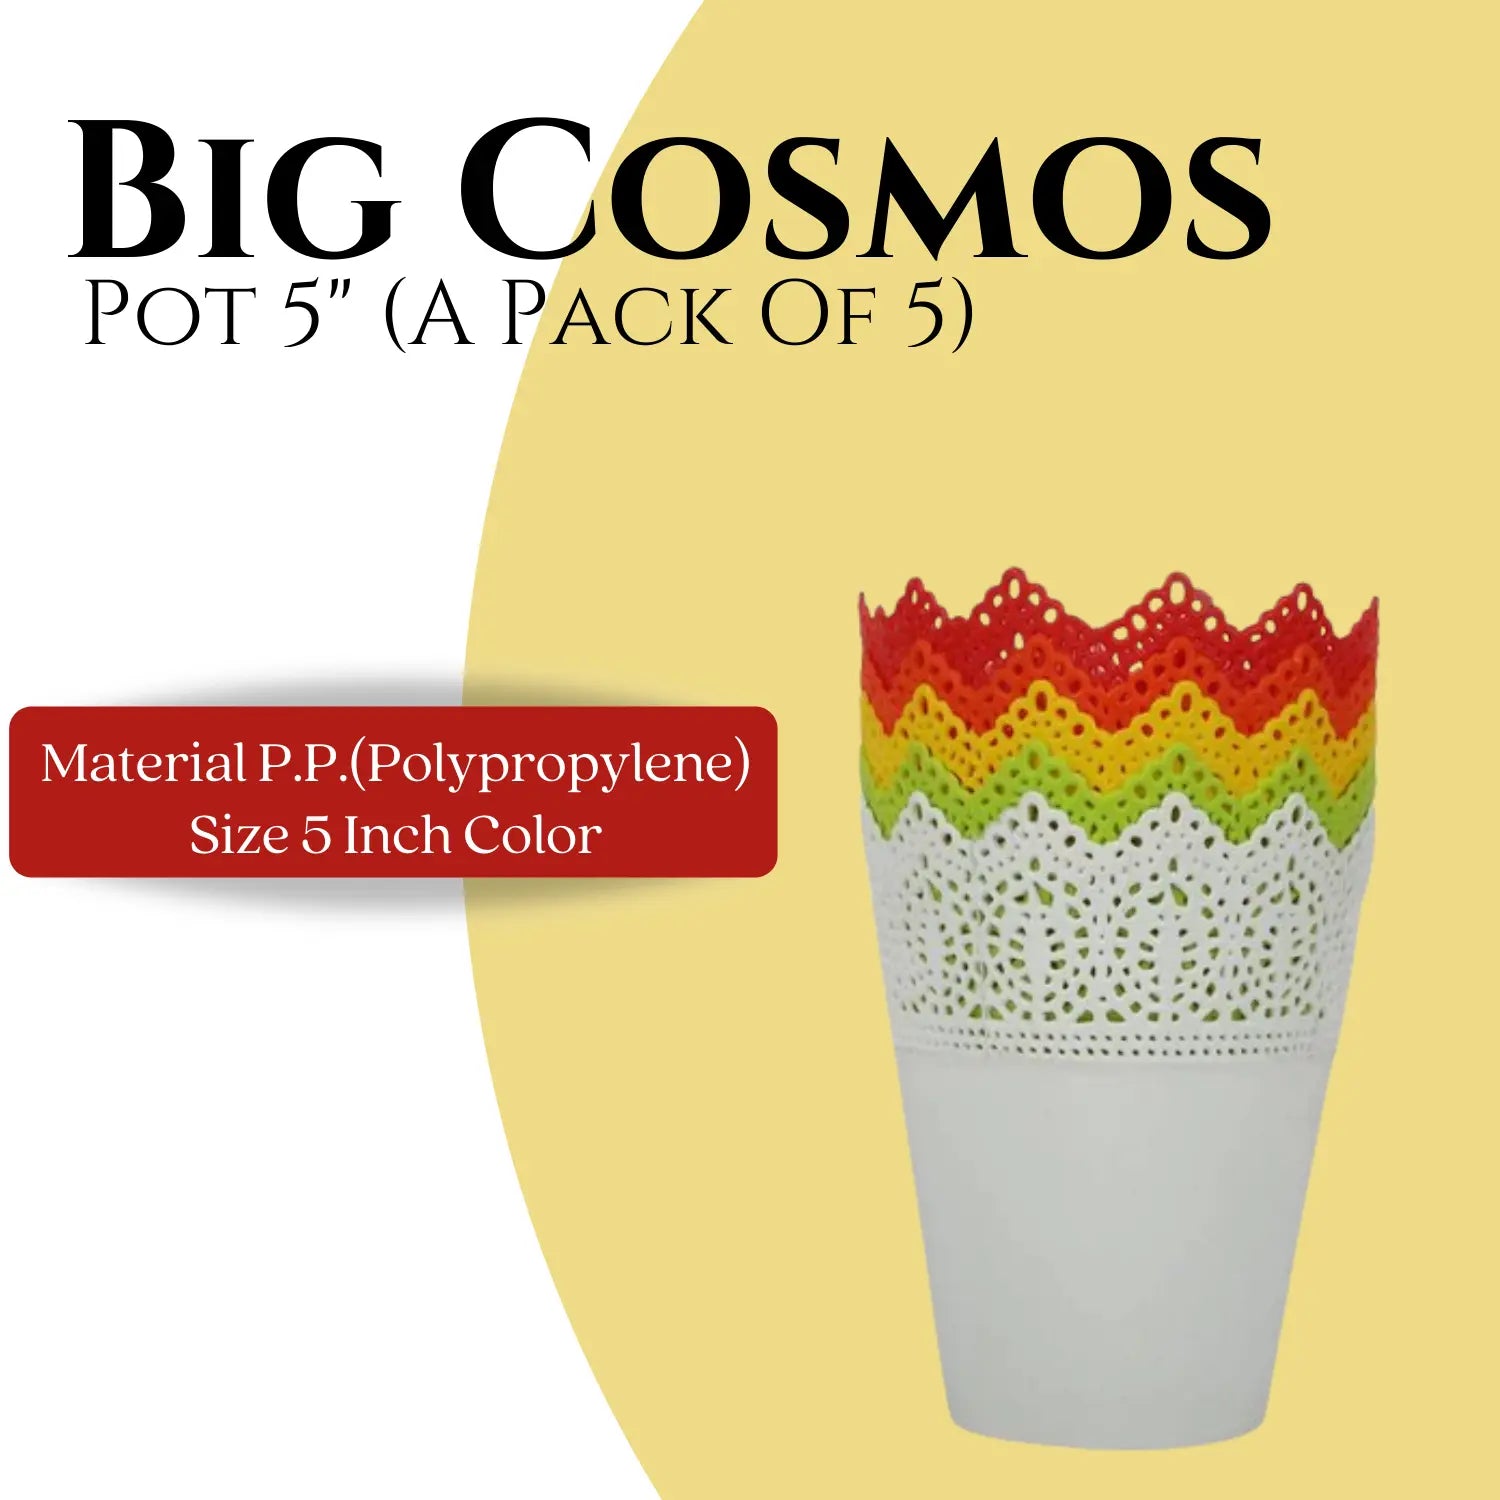 Big Cosmos Pot 5